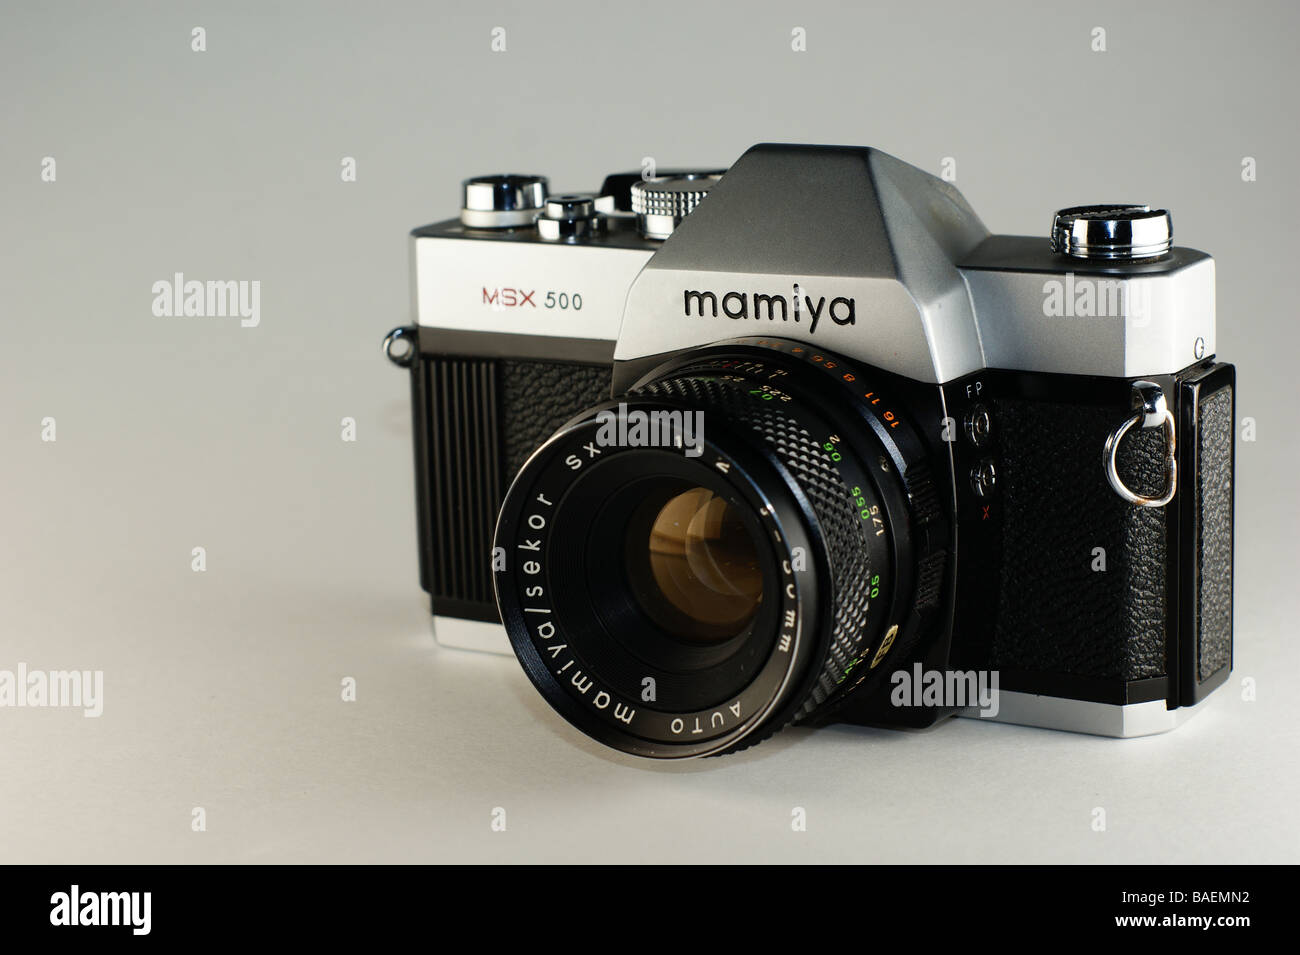 Mamiya 35mm camera front Photo Alamy